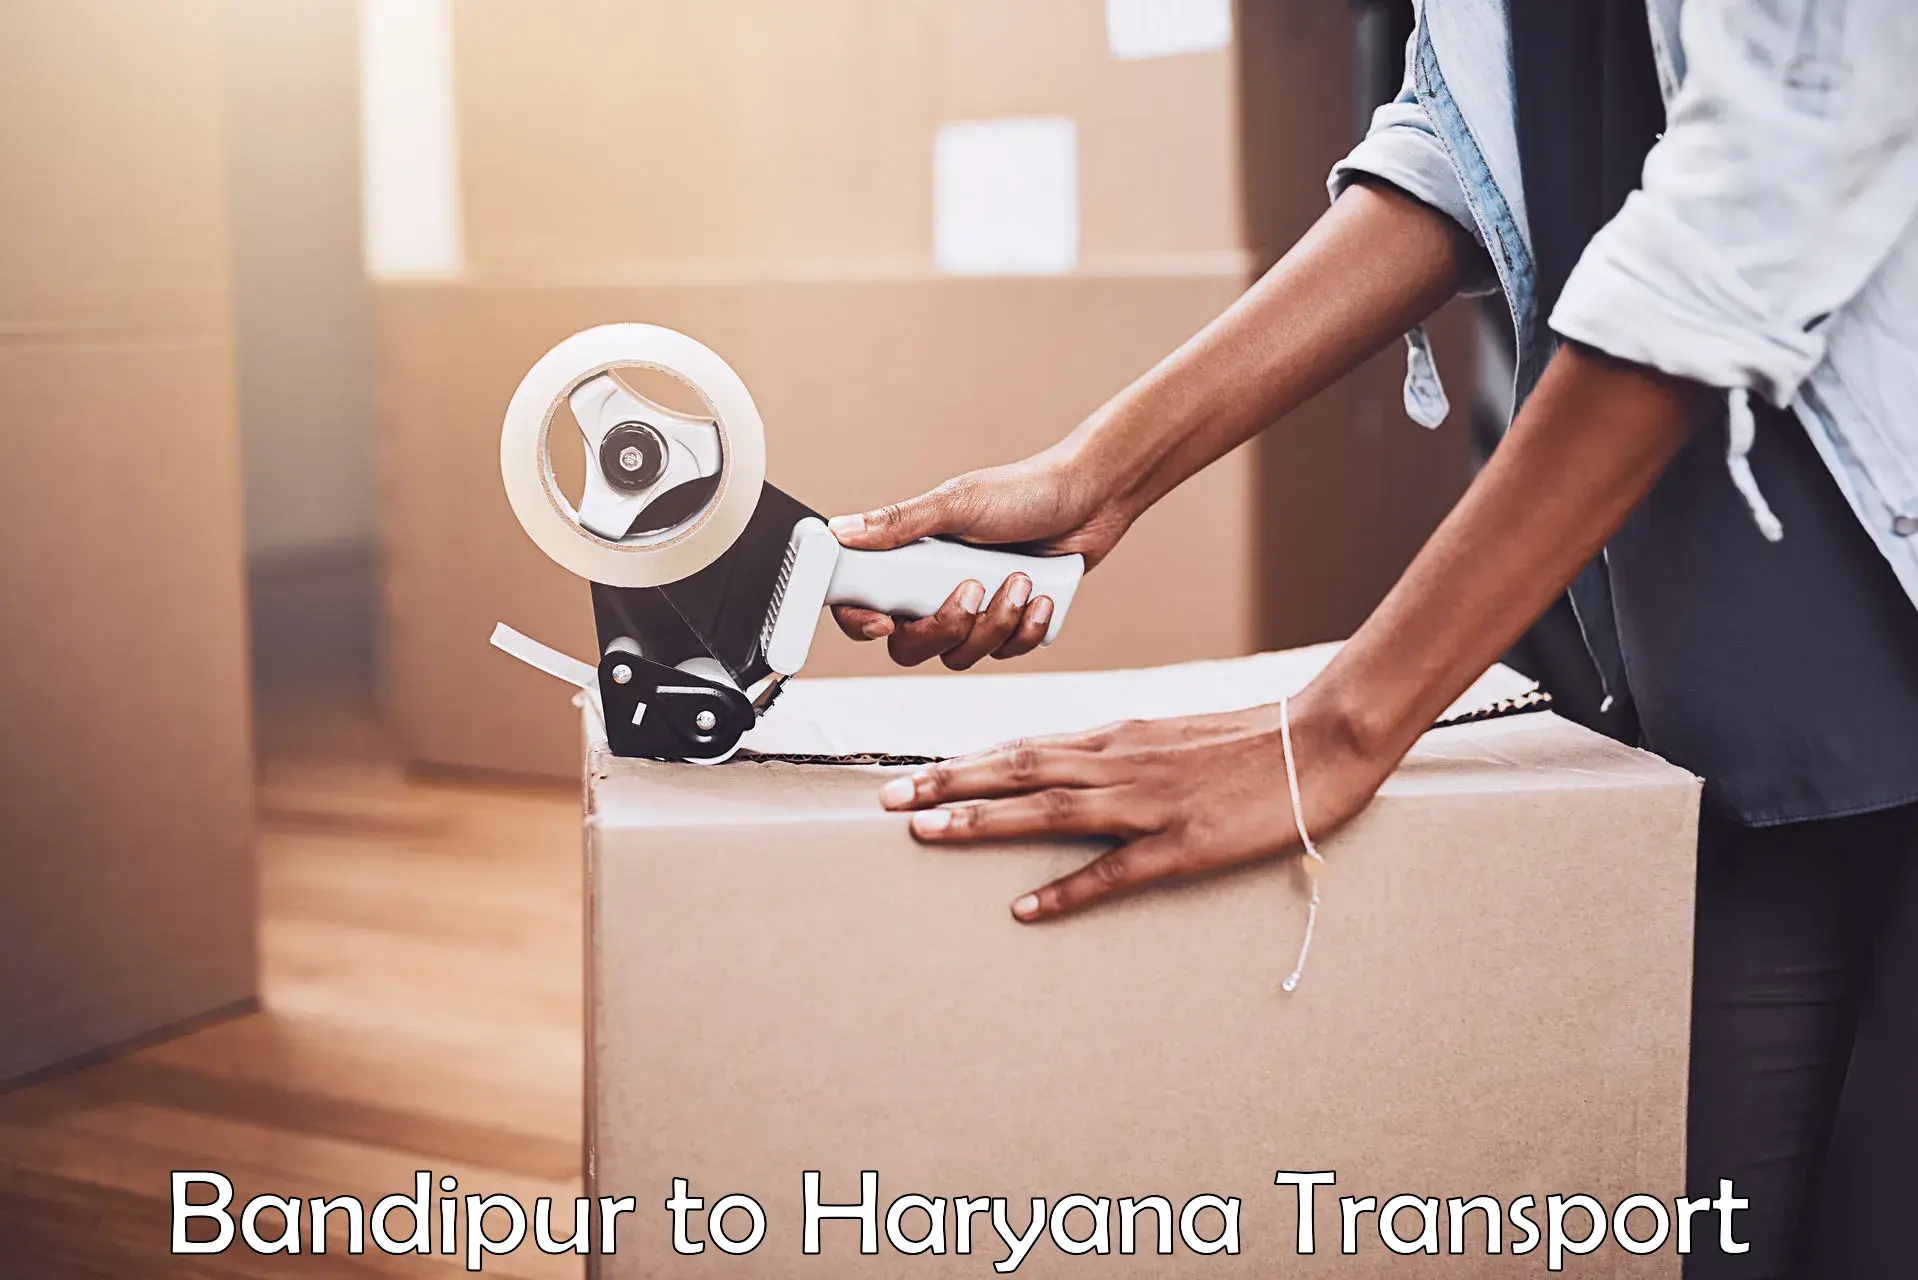 Shipping partner Bandipur to Gurugram